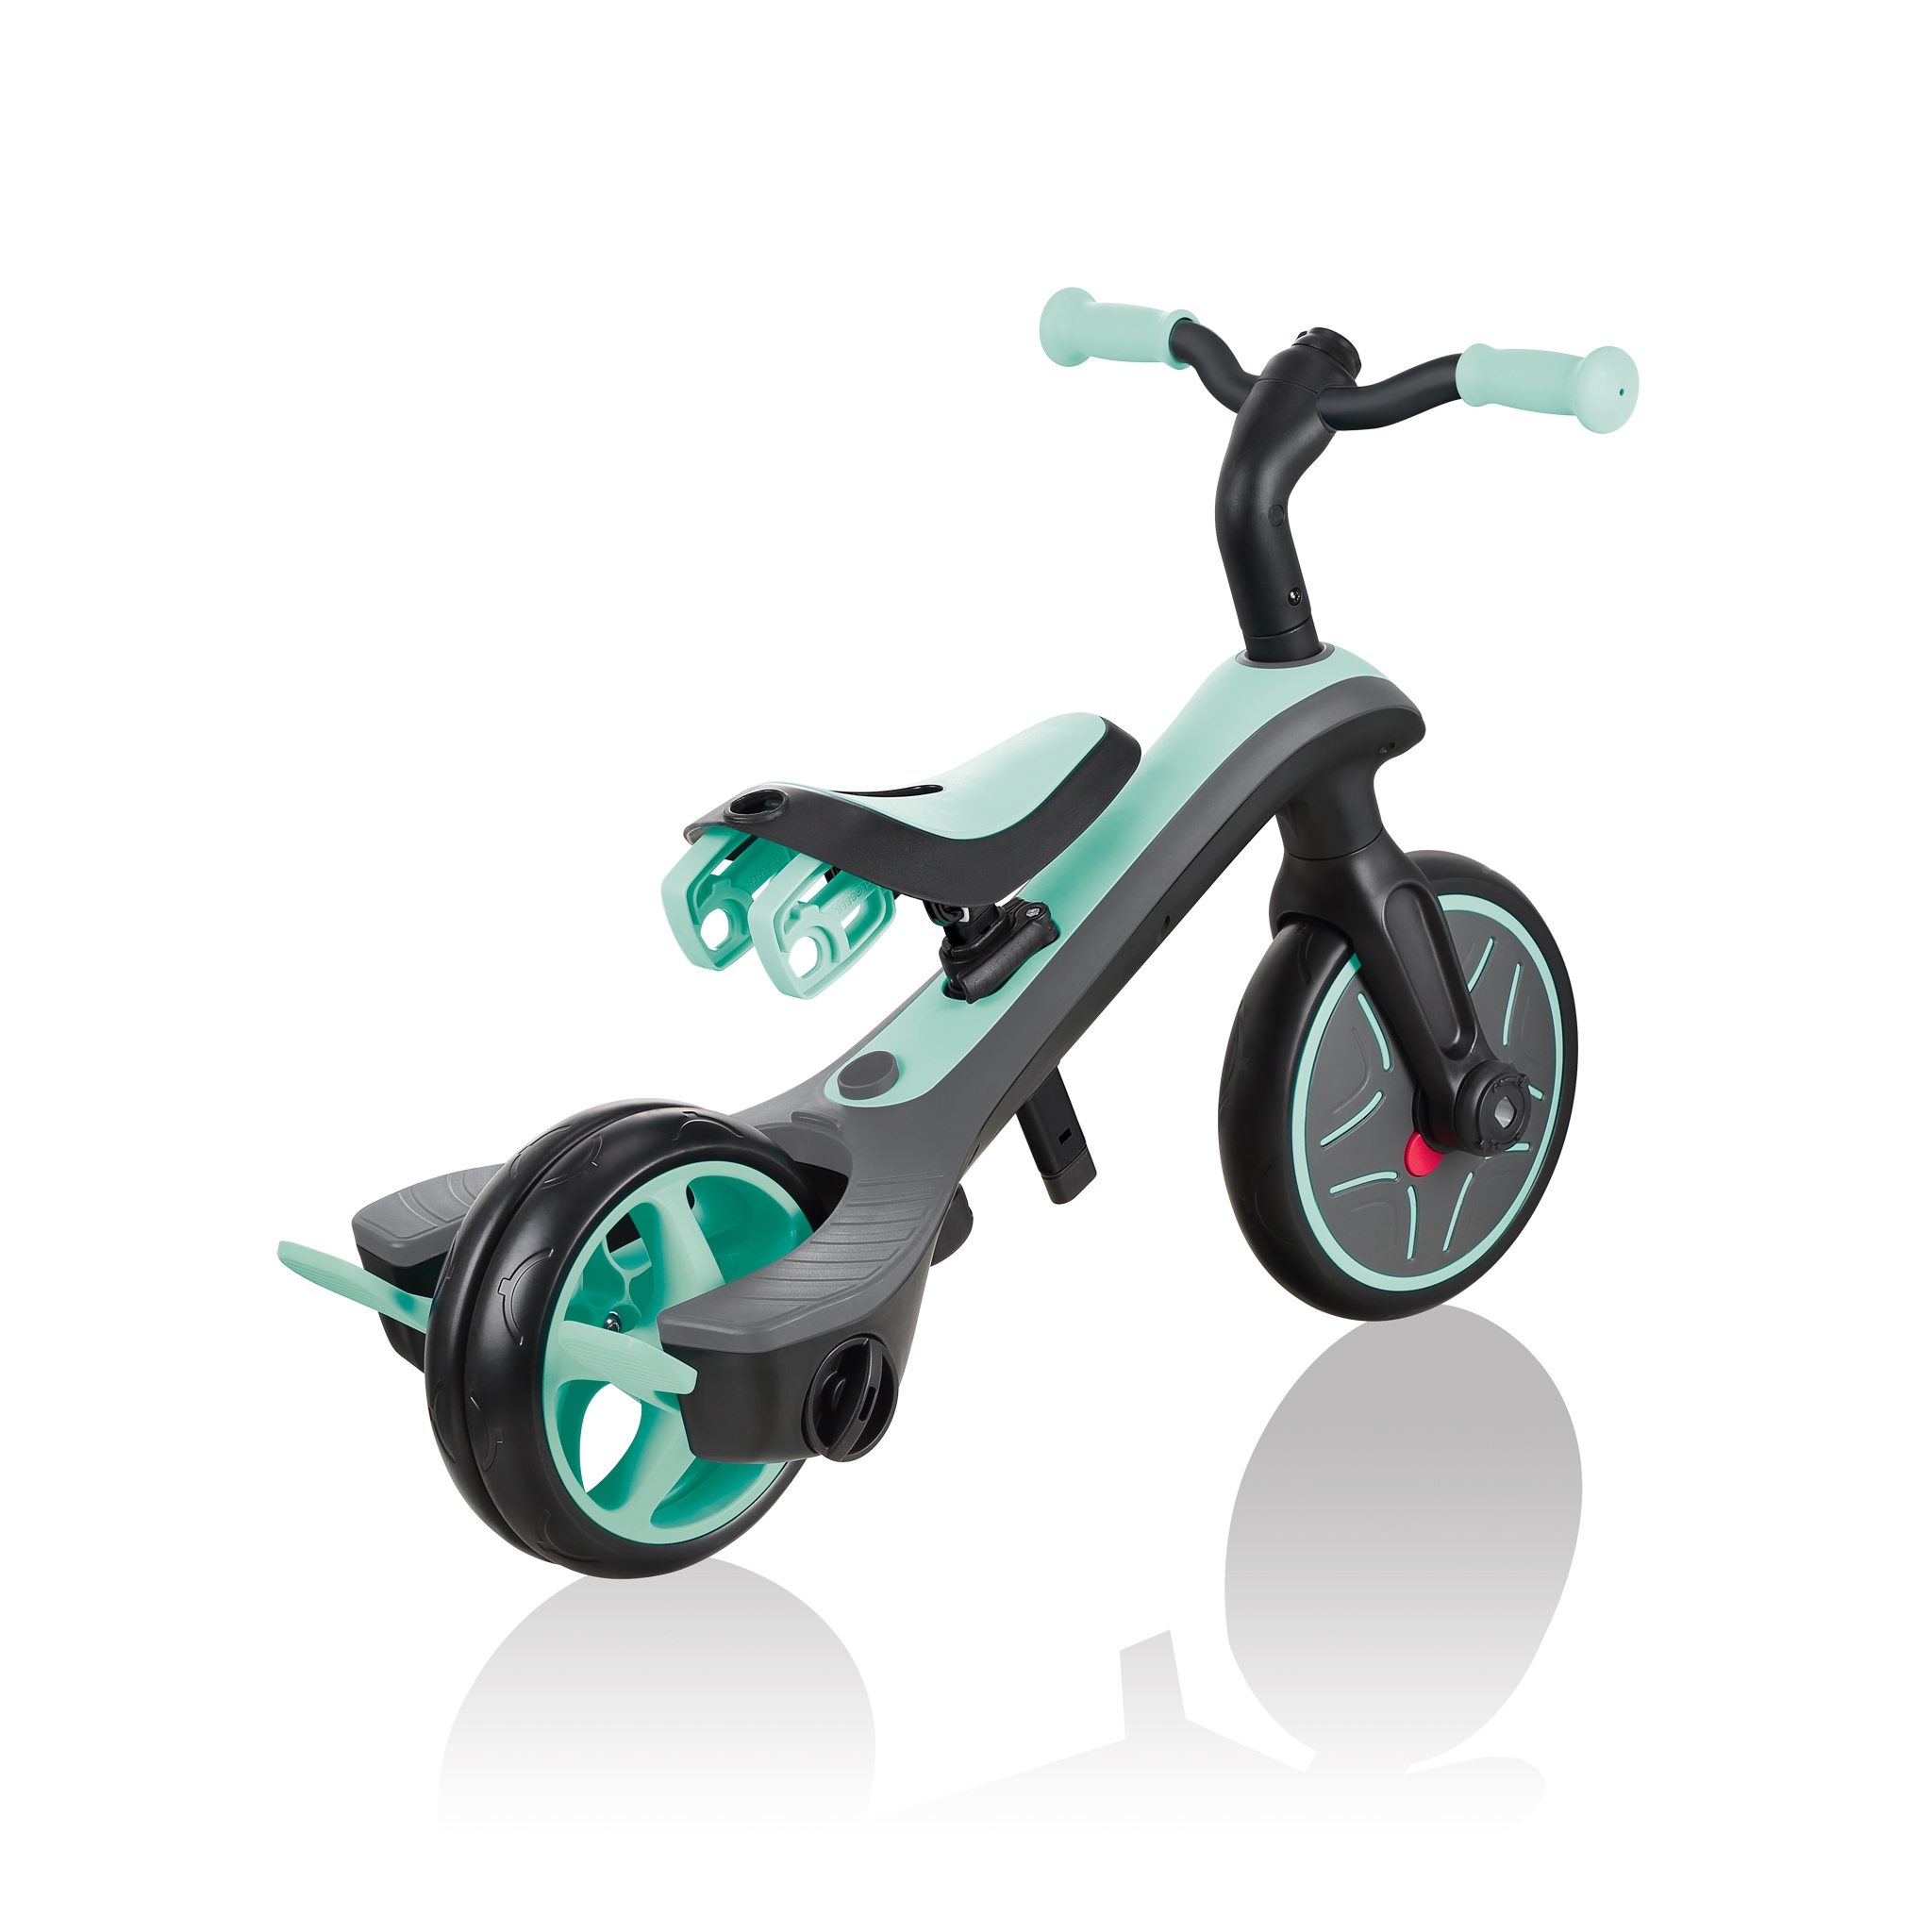 Triciclo, Monopattino con Seduta e Balance Bike per bambini EXPLORER TRIKE  4 in 1 di Globber, Vari Colori